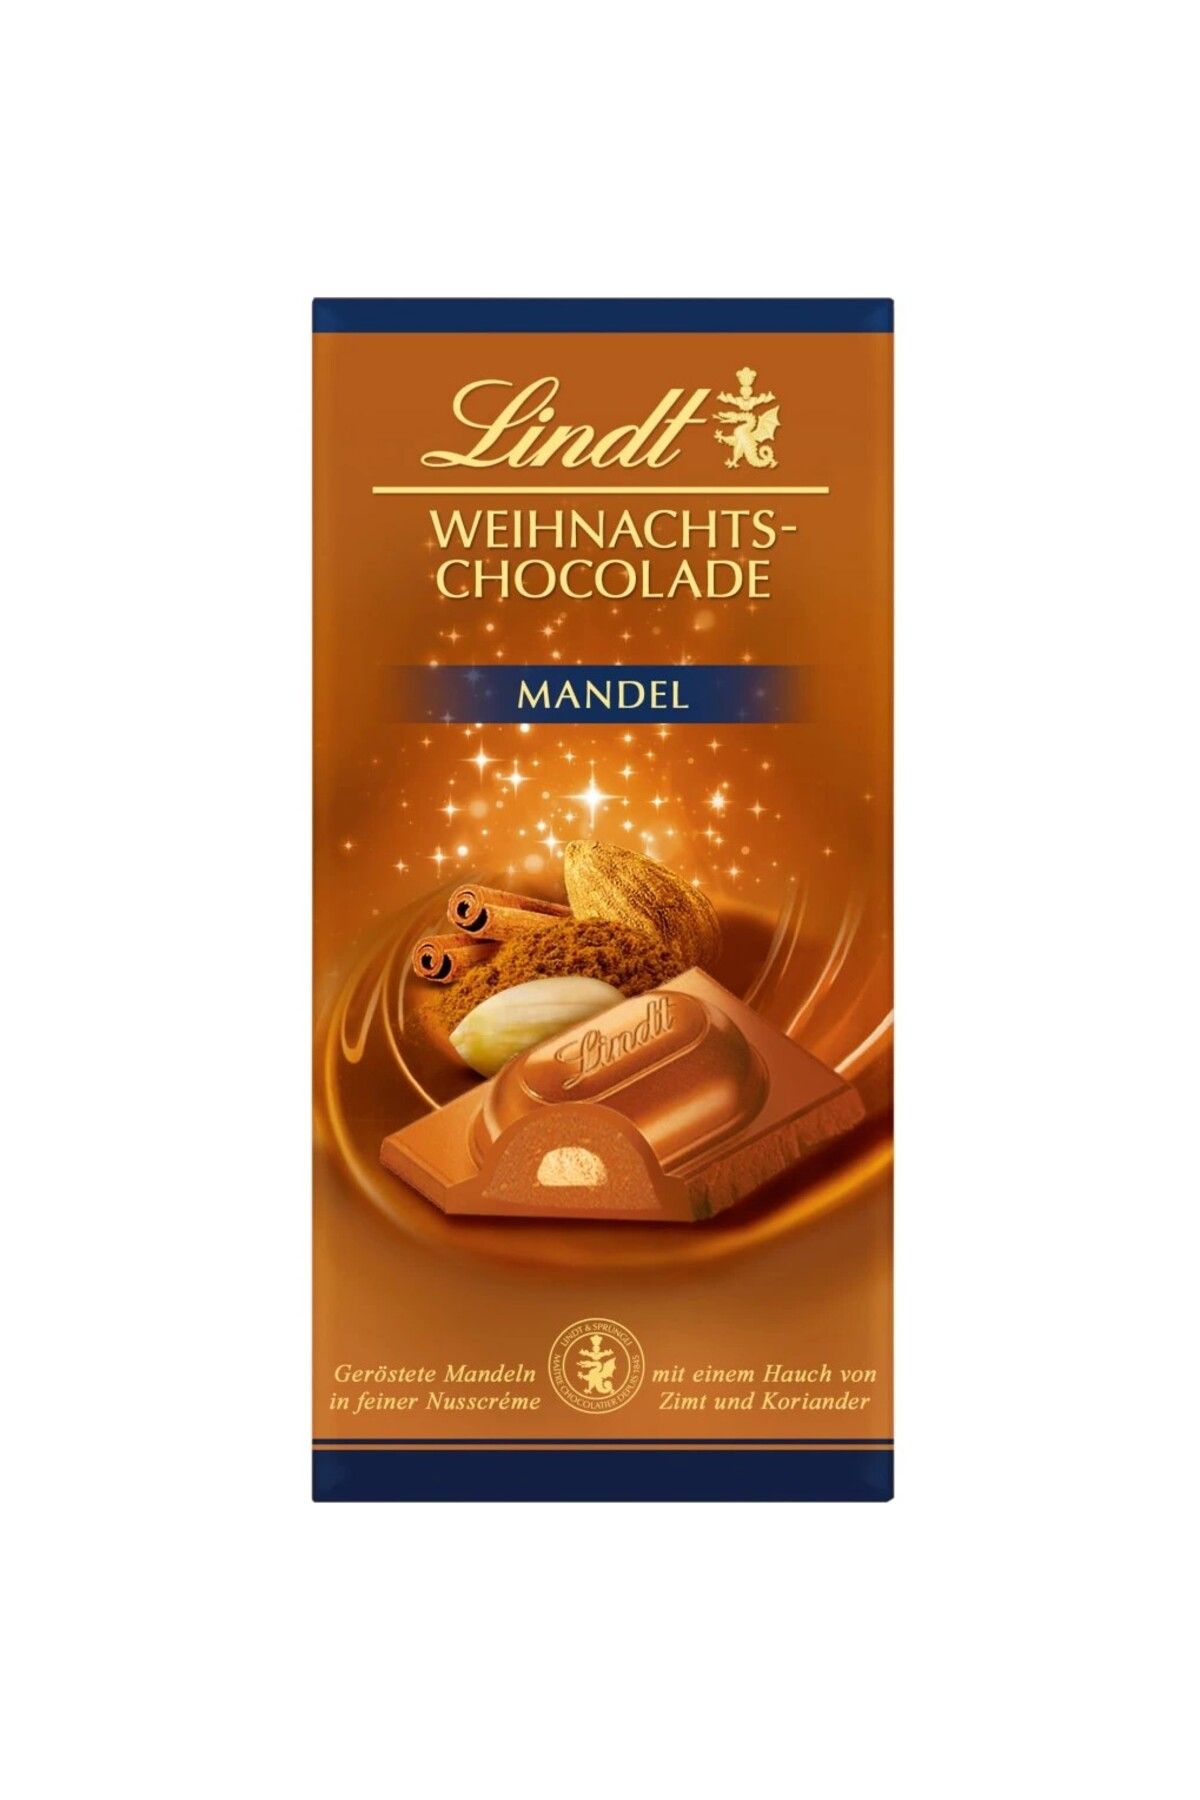 Lindt Weihnachts-Chocolade Mandel Tafel 100g 